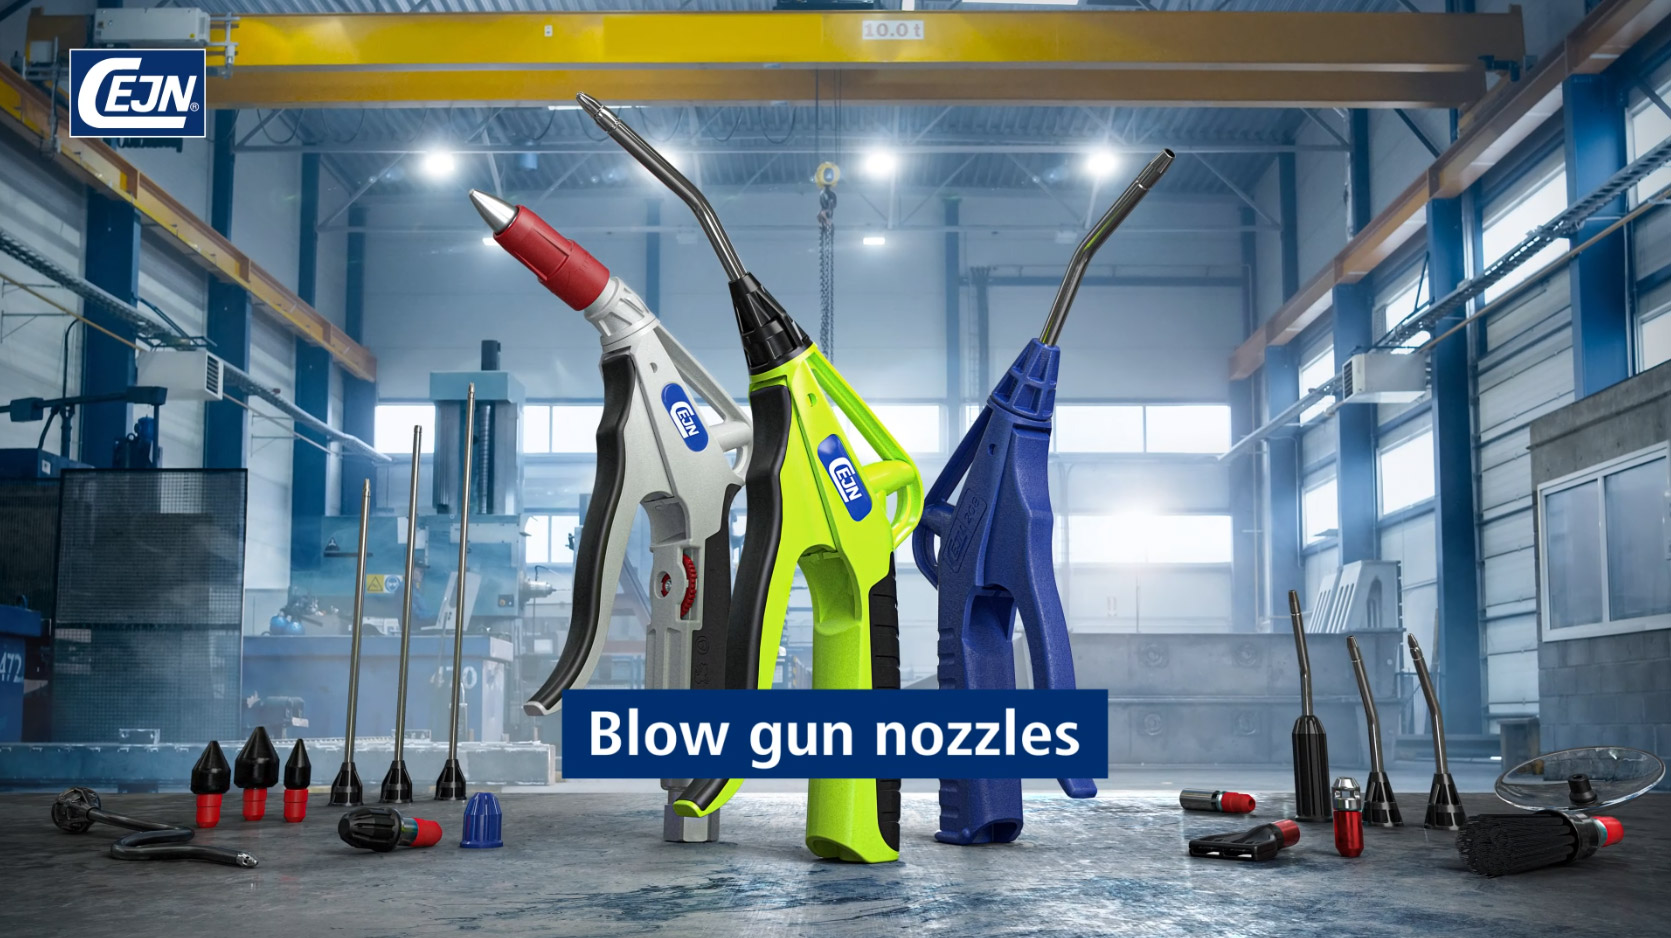 Blow gun nozzles